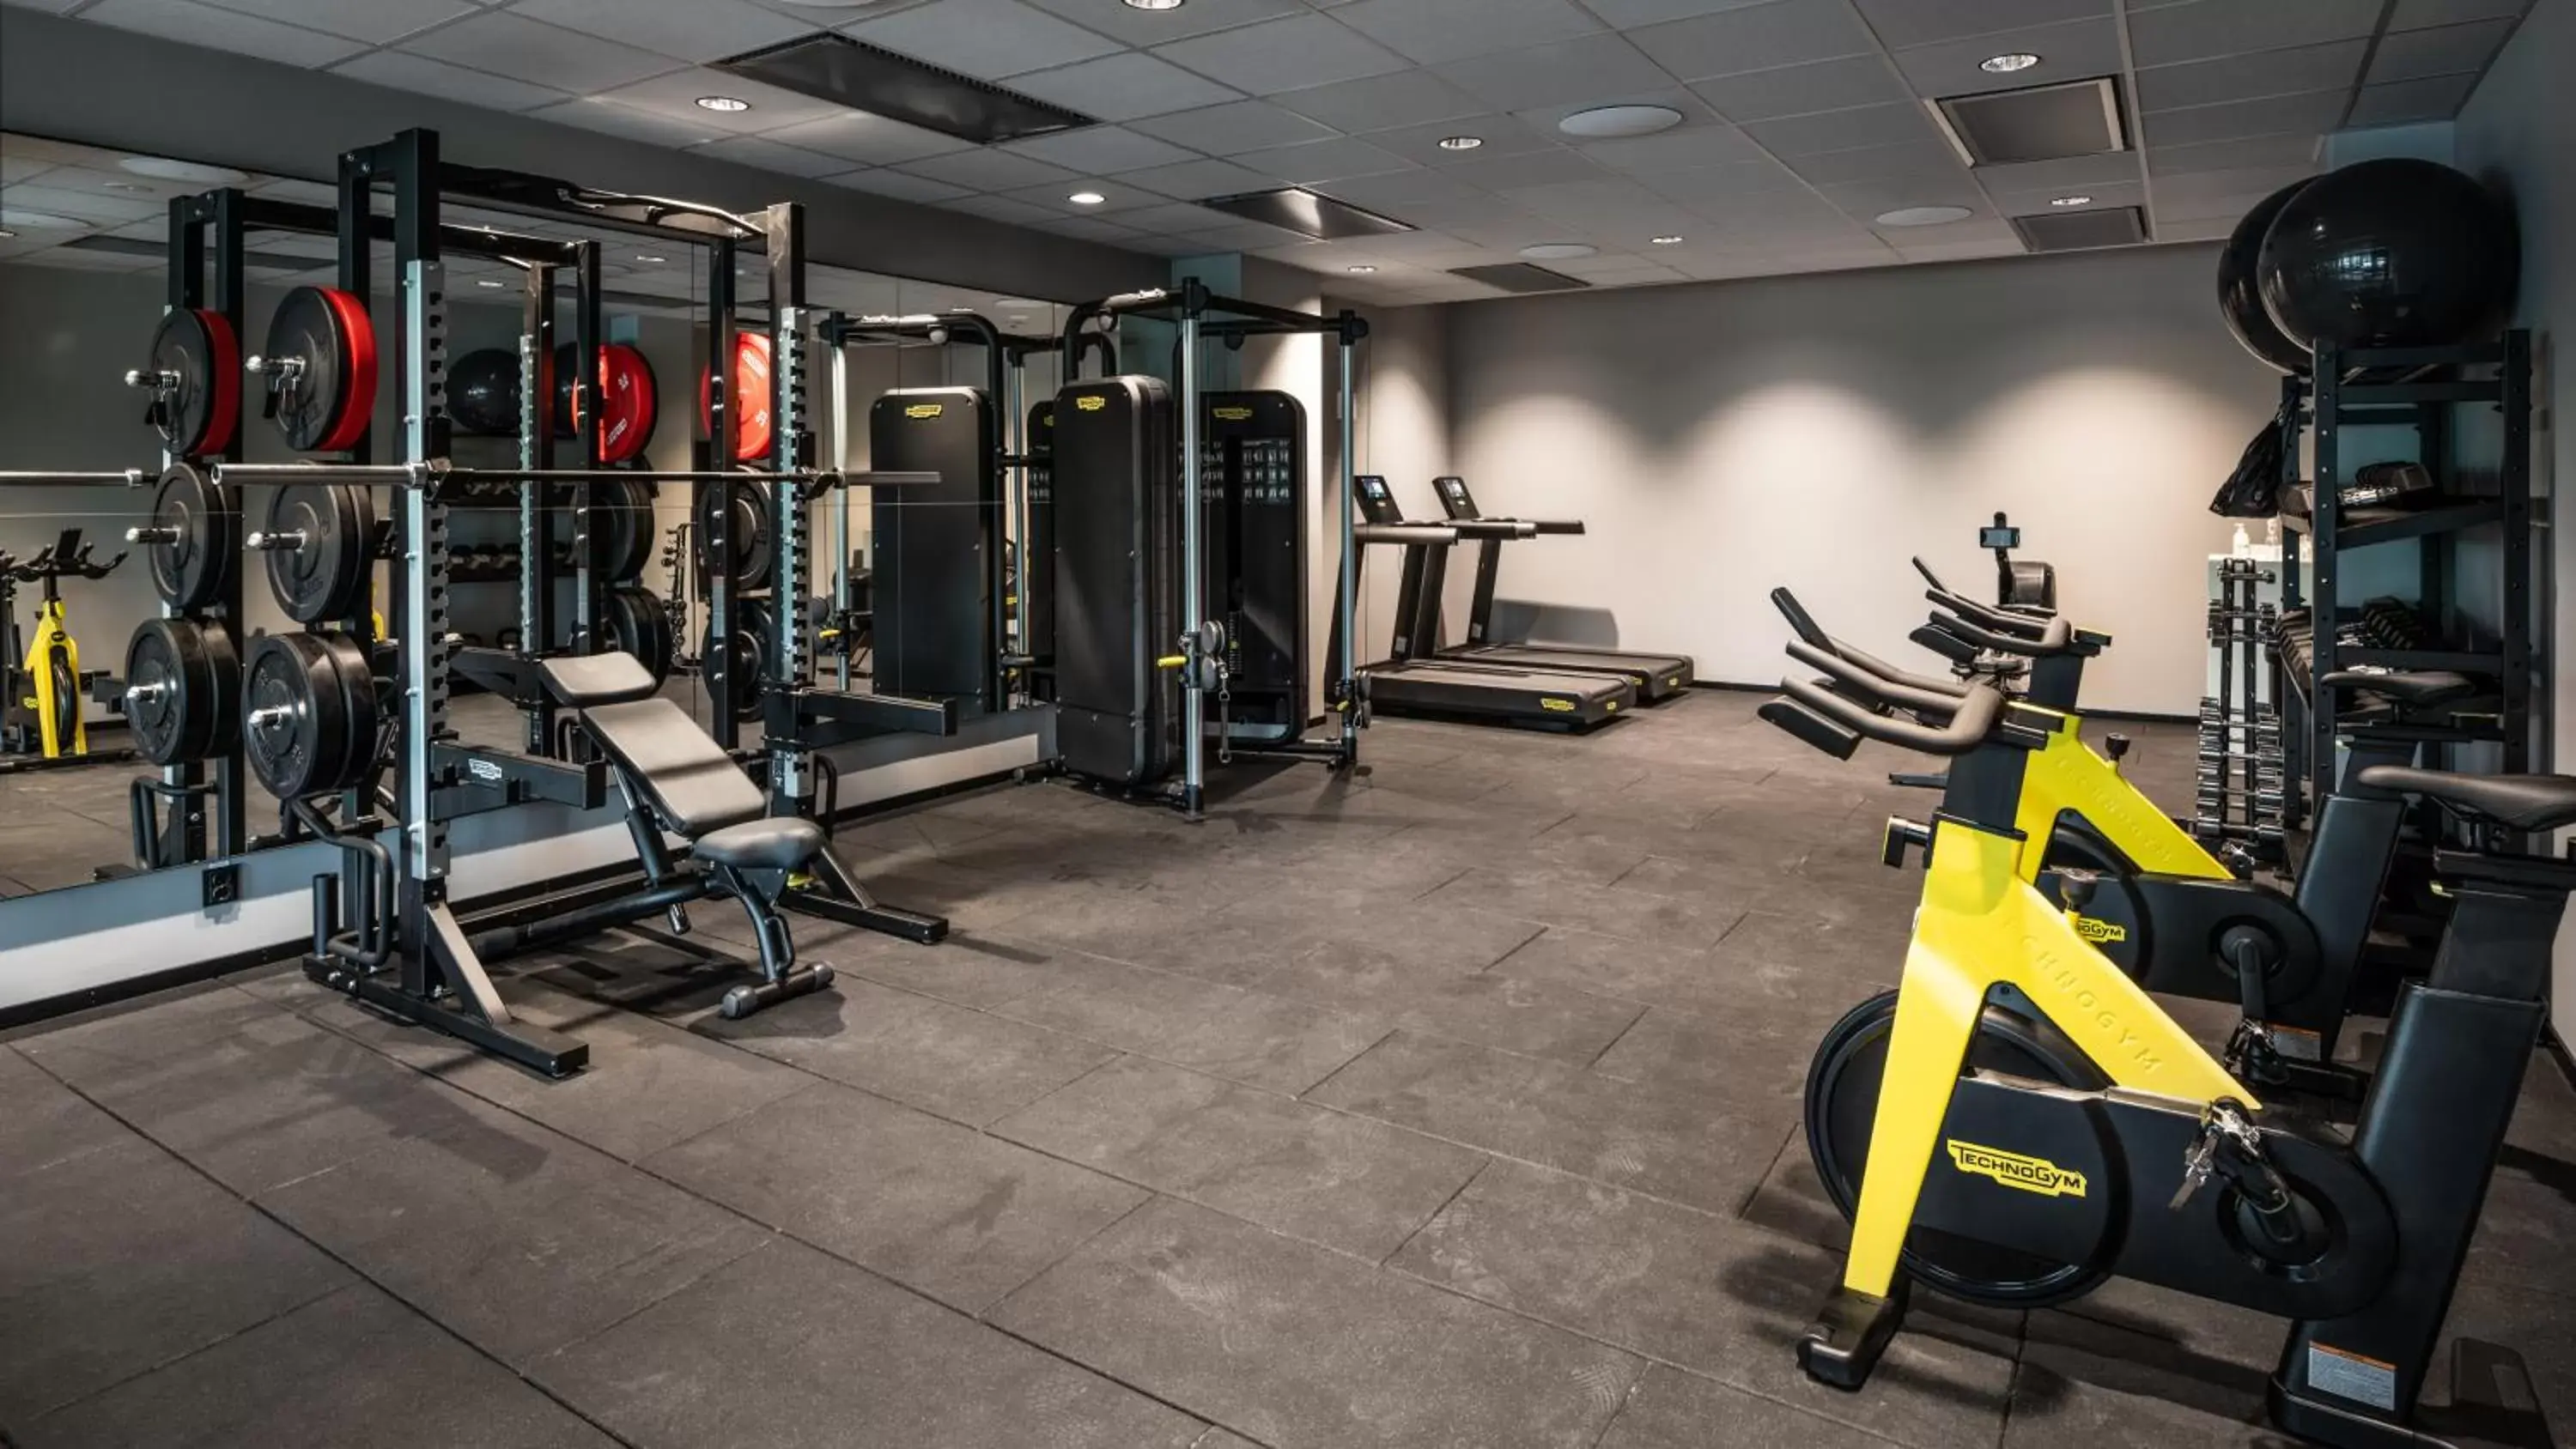 Fitness centre/facilities, Fitness Center/Facilities in Comfort Hotel Solna Arenastaden